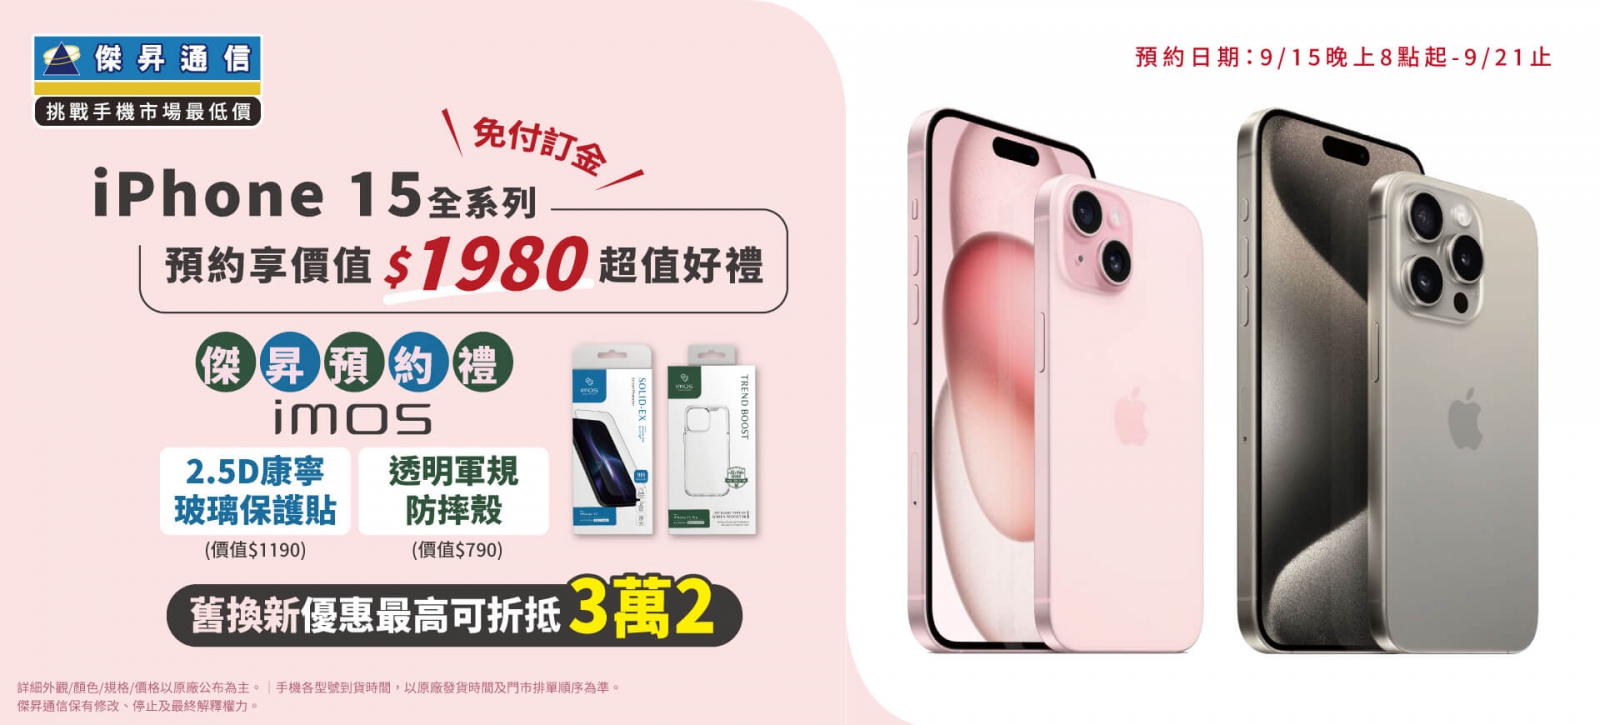 iPhone 15全系列預約，傑昇通信祭五大好康，讓果粉越買越省